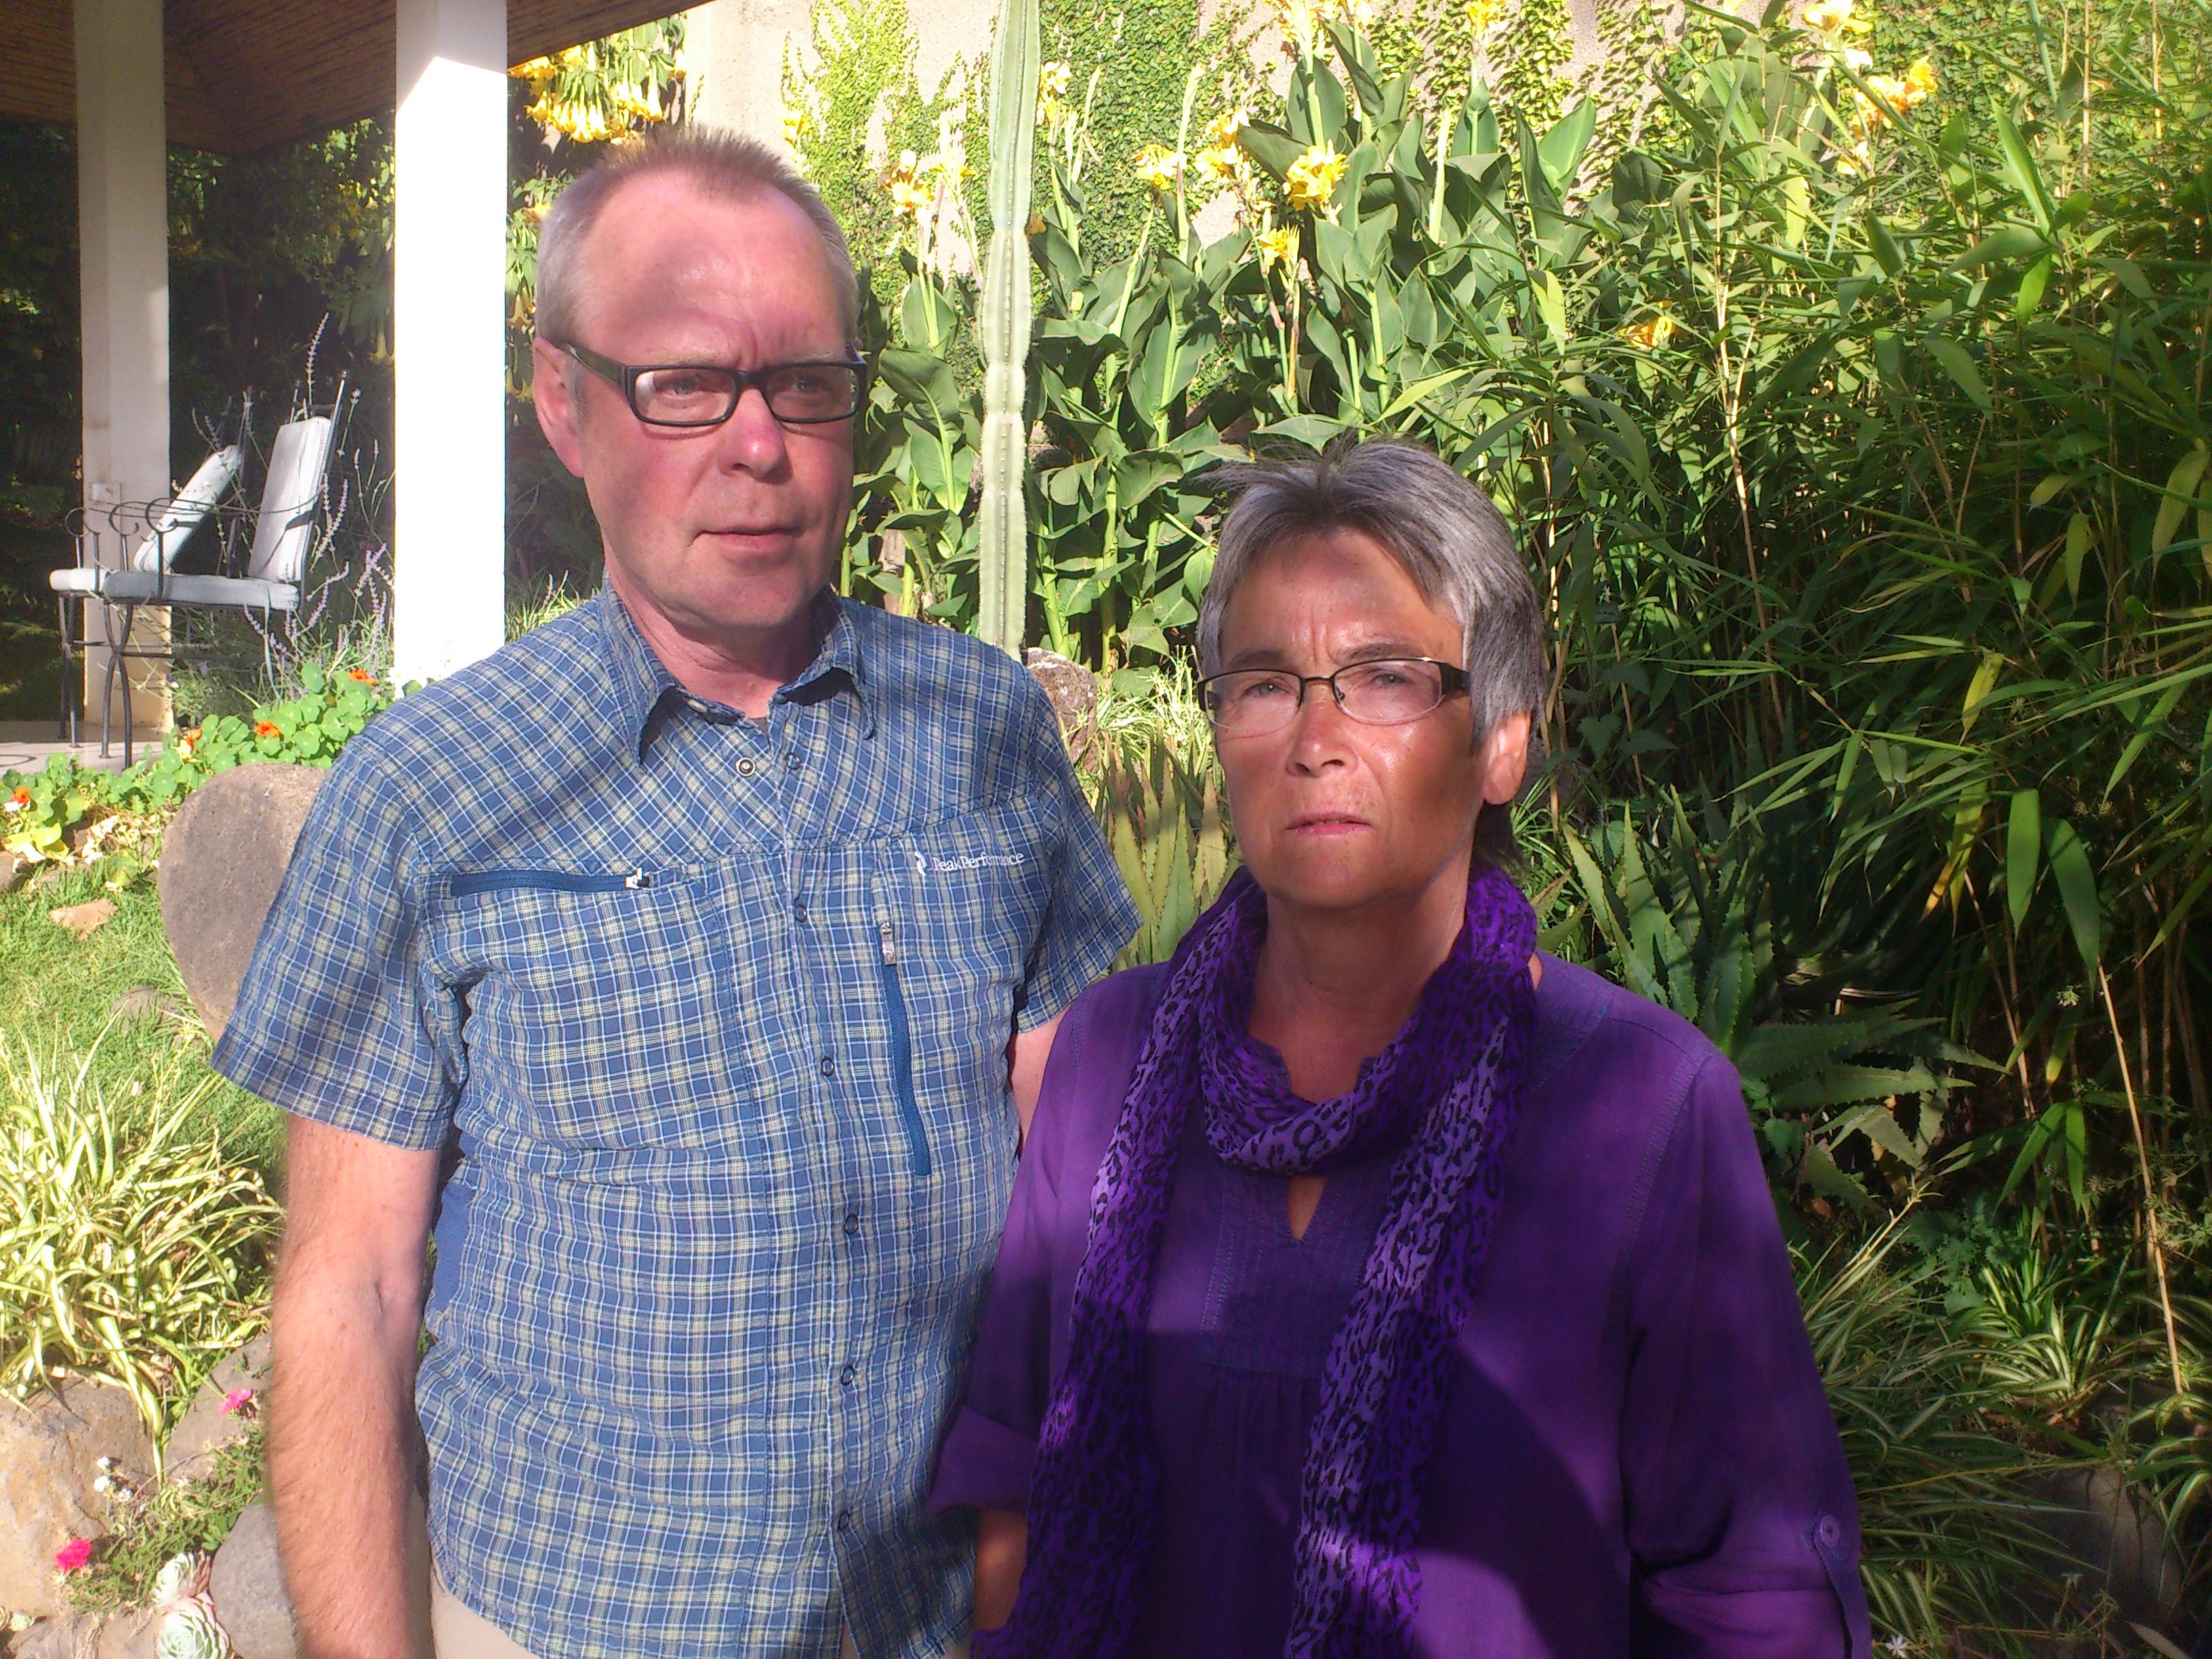 Johan Perssons föräldrar Kjell och Kristina stannade kvar i Addis Abeba efter förra omgången i rättsprocessen. nu väntar de spänt på onsdagens dom mot deras son och reportern Martin Schibbye. 